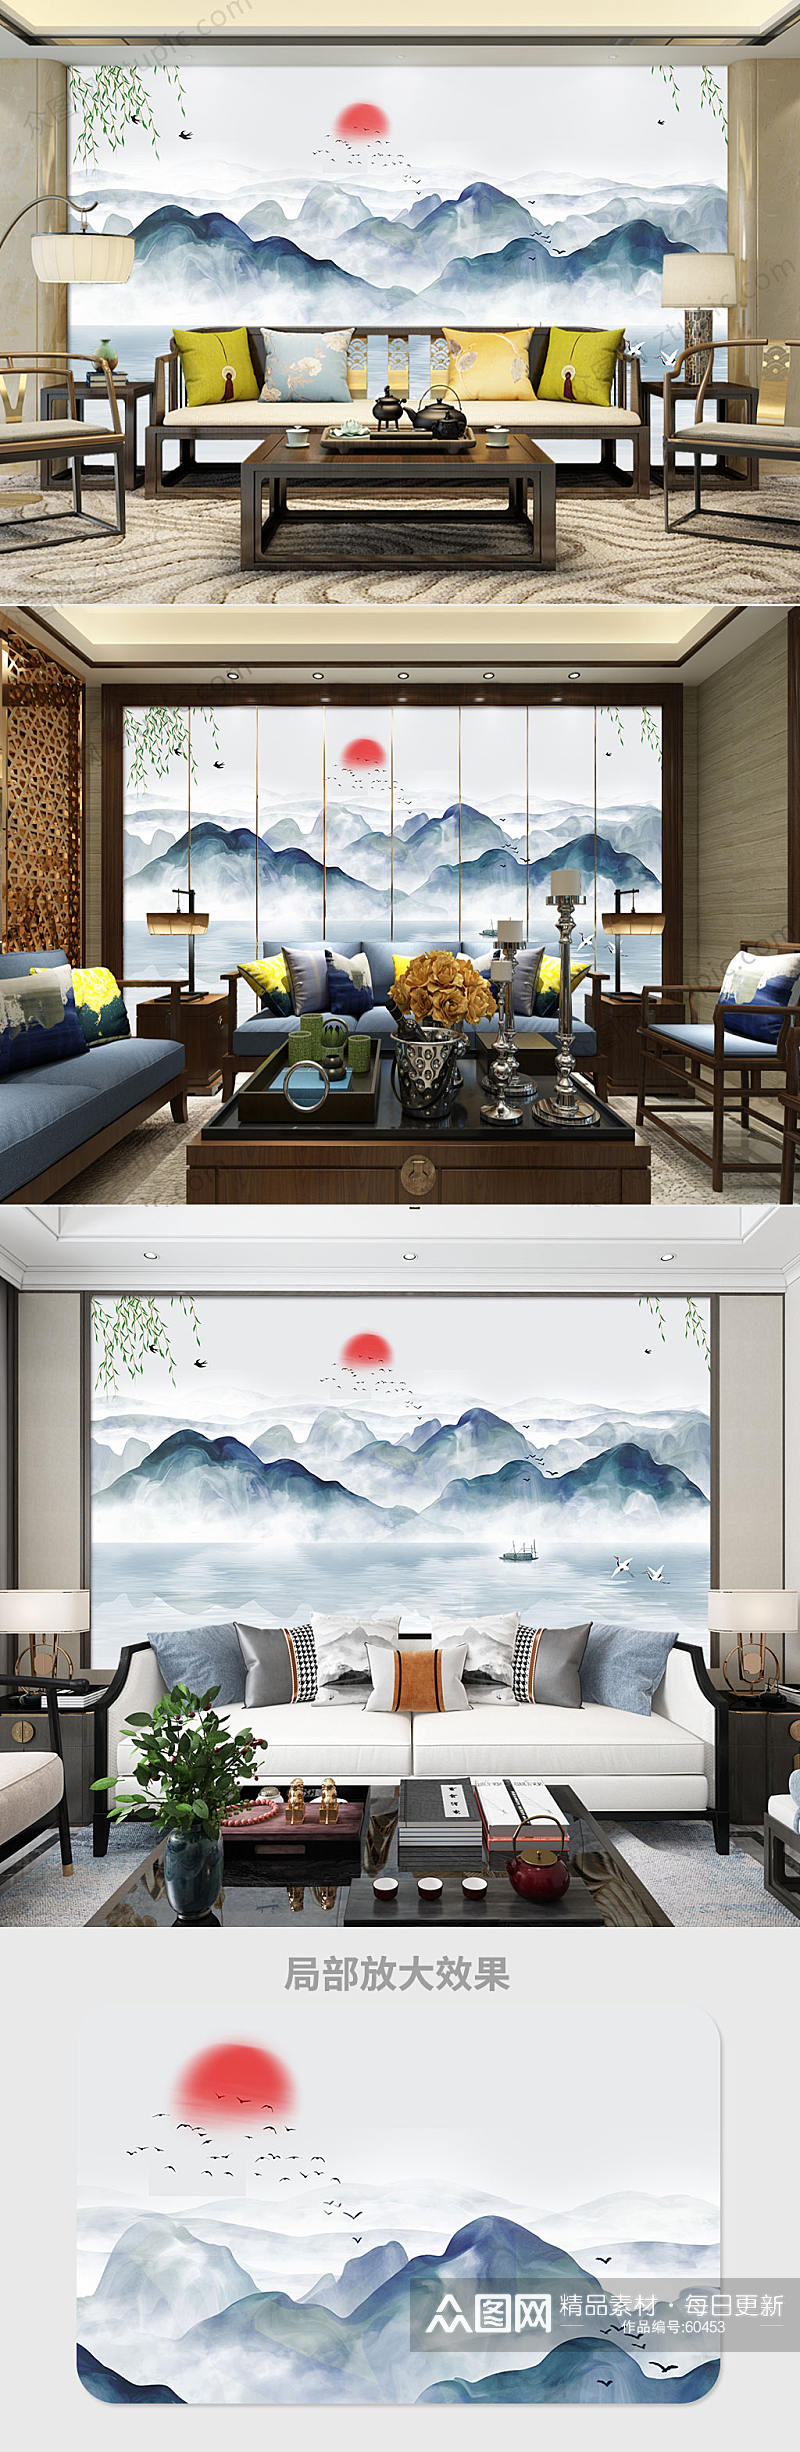 中国风水墨山水背景墙素材